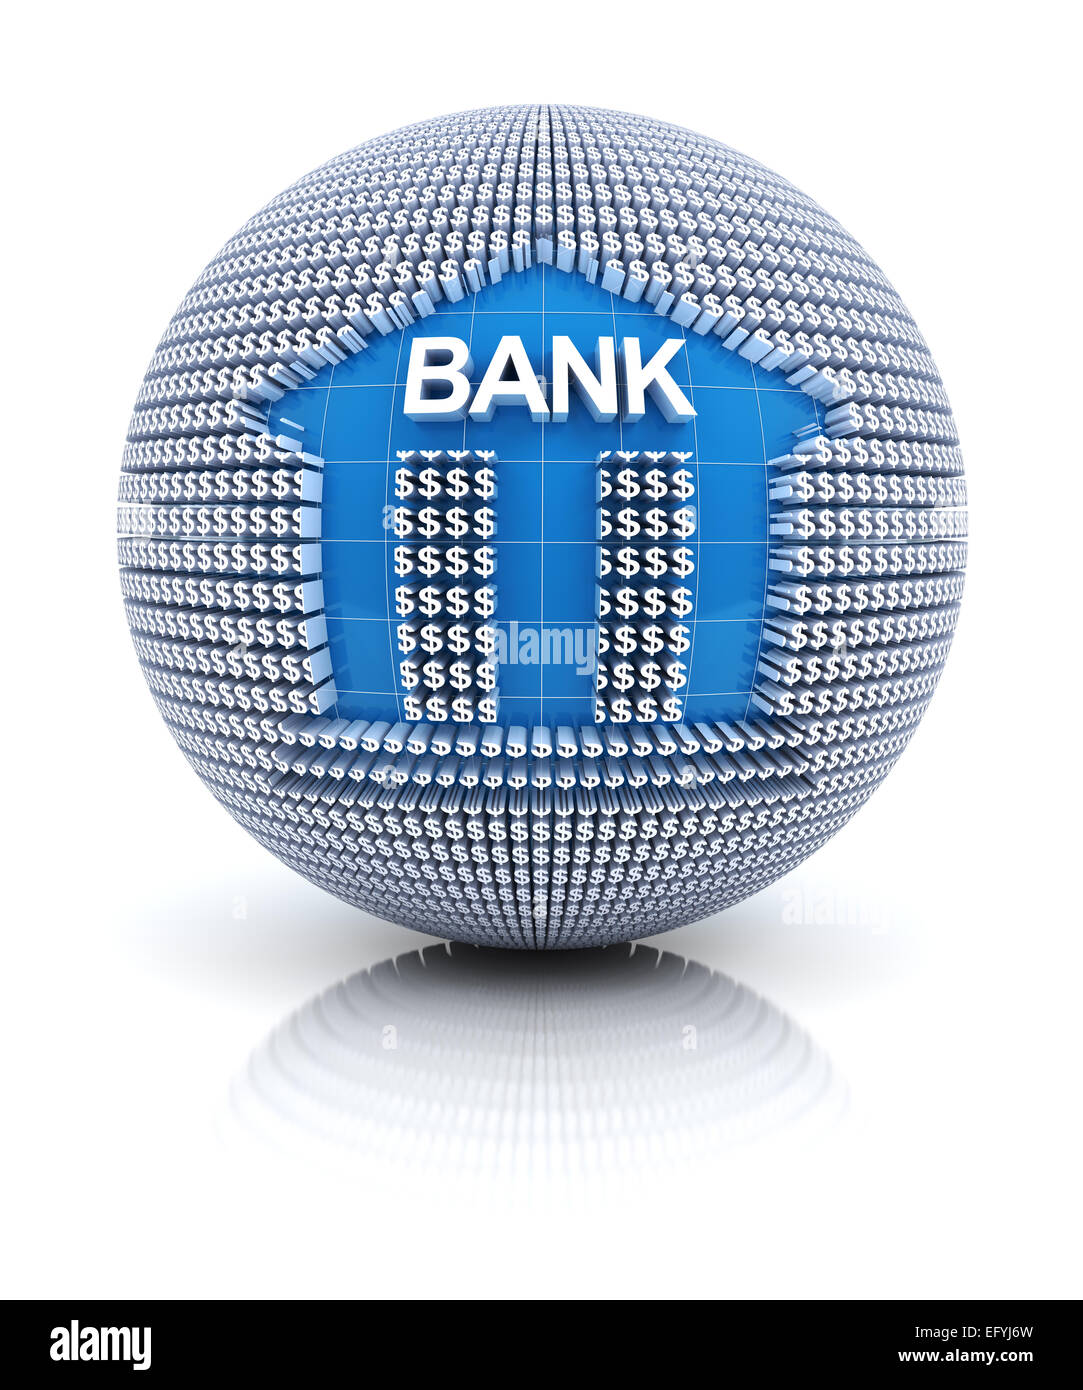 Icona della banca sul globo terrestre formato da dollar sign Foto Stock